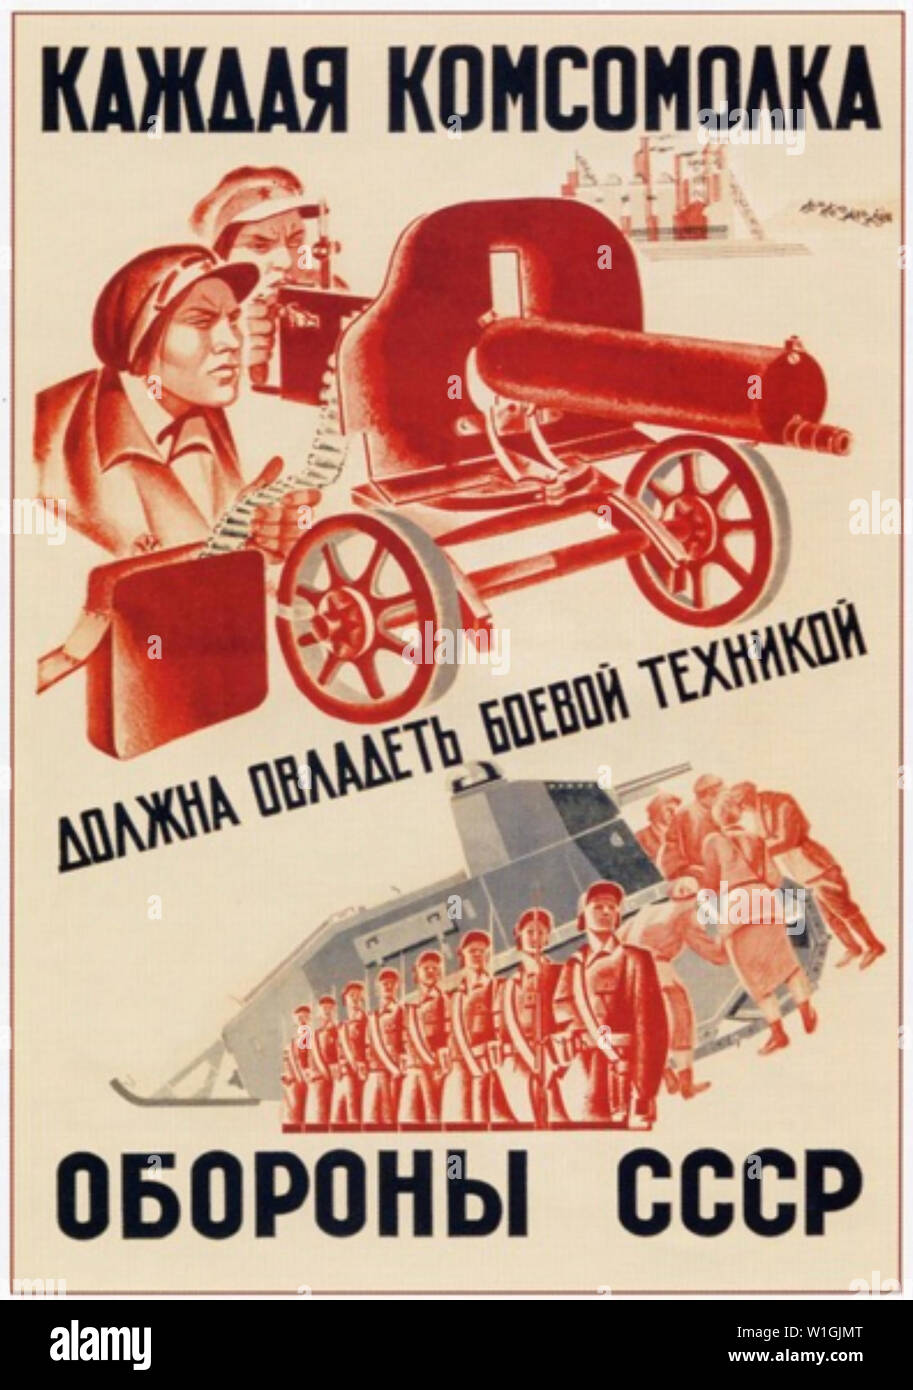 Tutte le ragazze KOMSOMOL deve padroneggiare l'esercito russo attrezzature 1932 poster sovietica Foto Stock